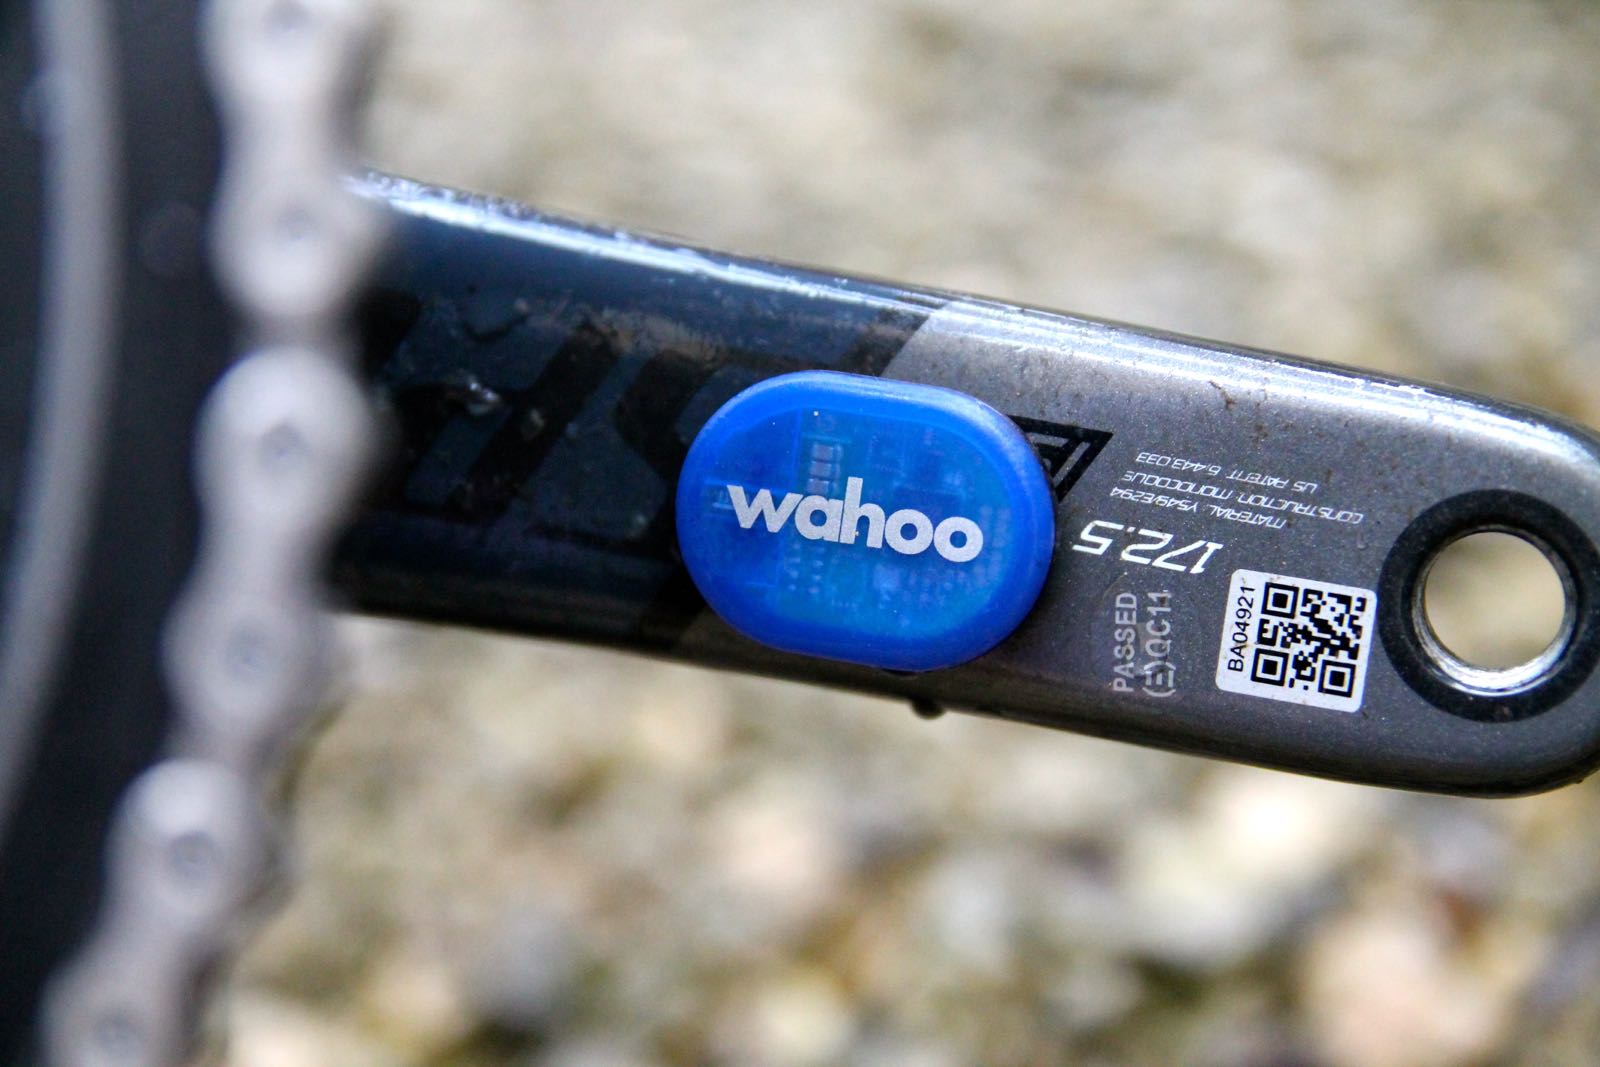 wahoo sensors on spin bike